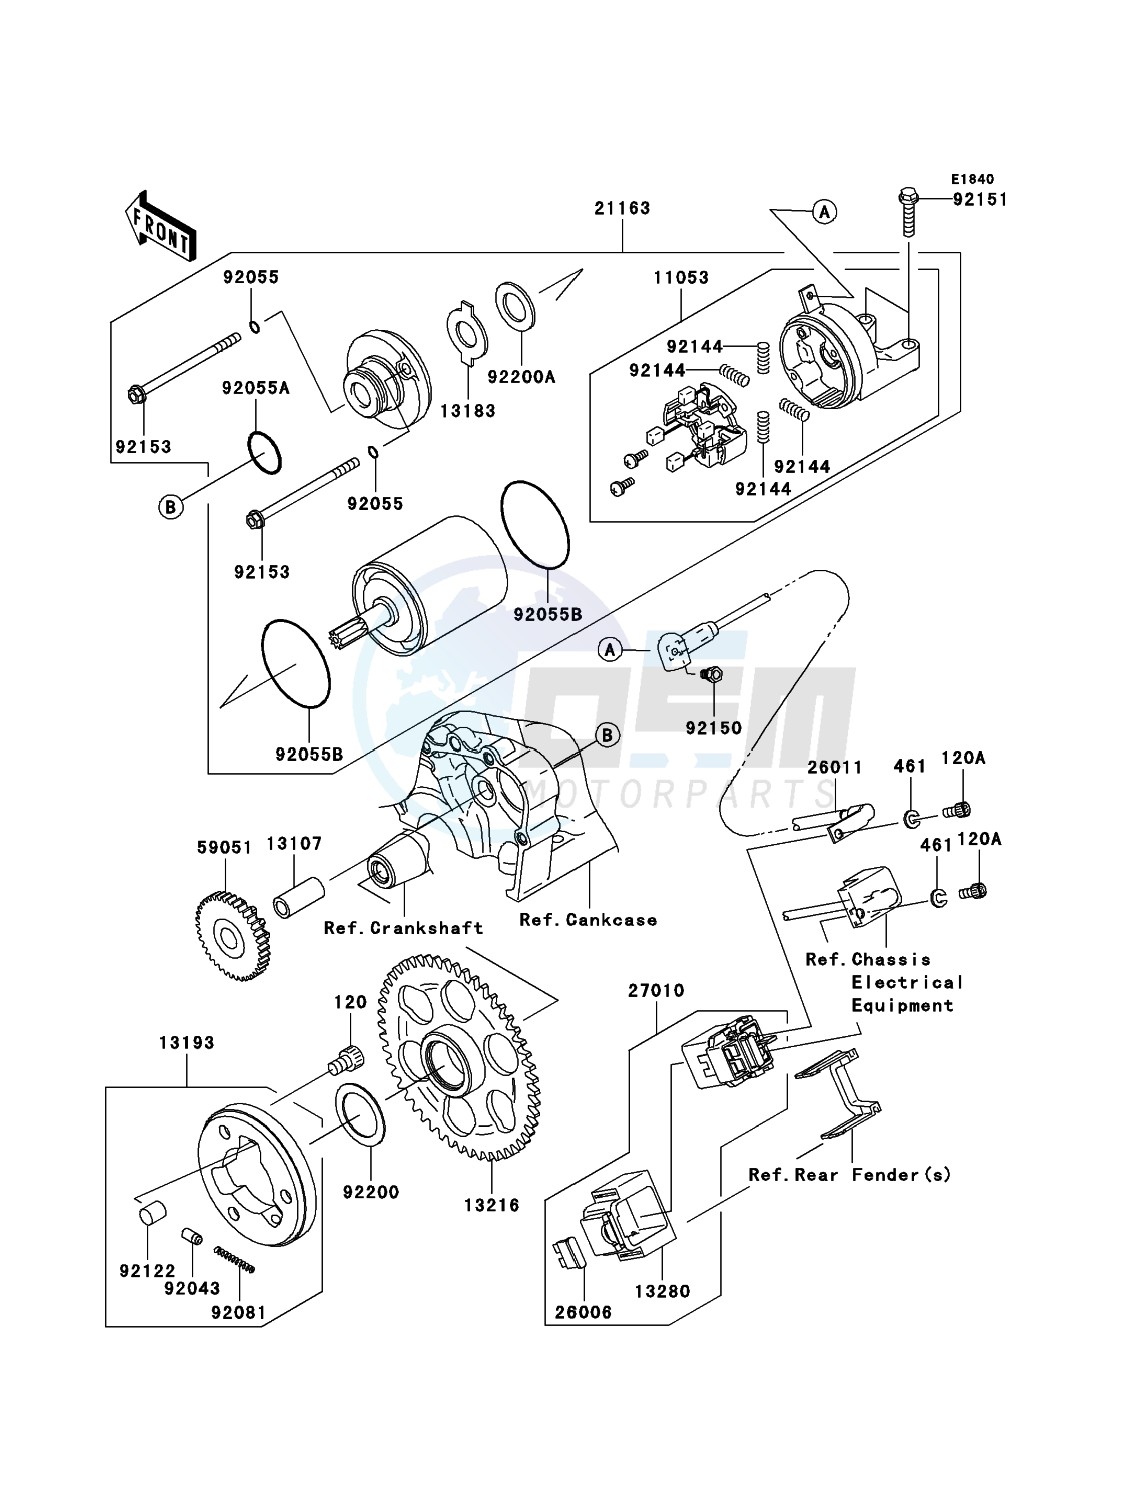 Starter Motor blueprint